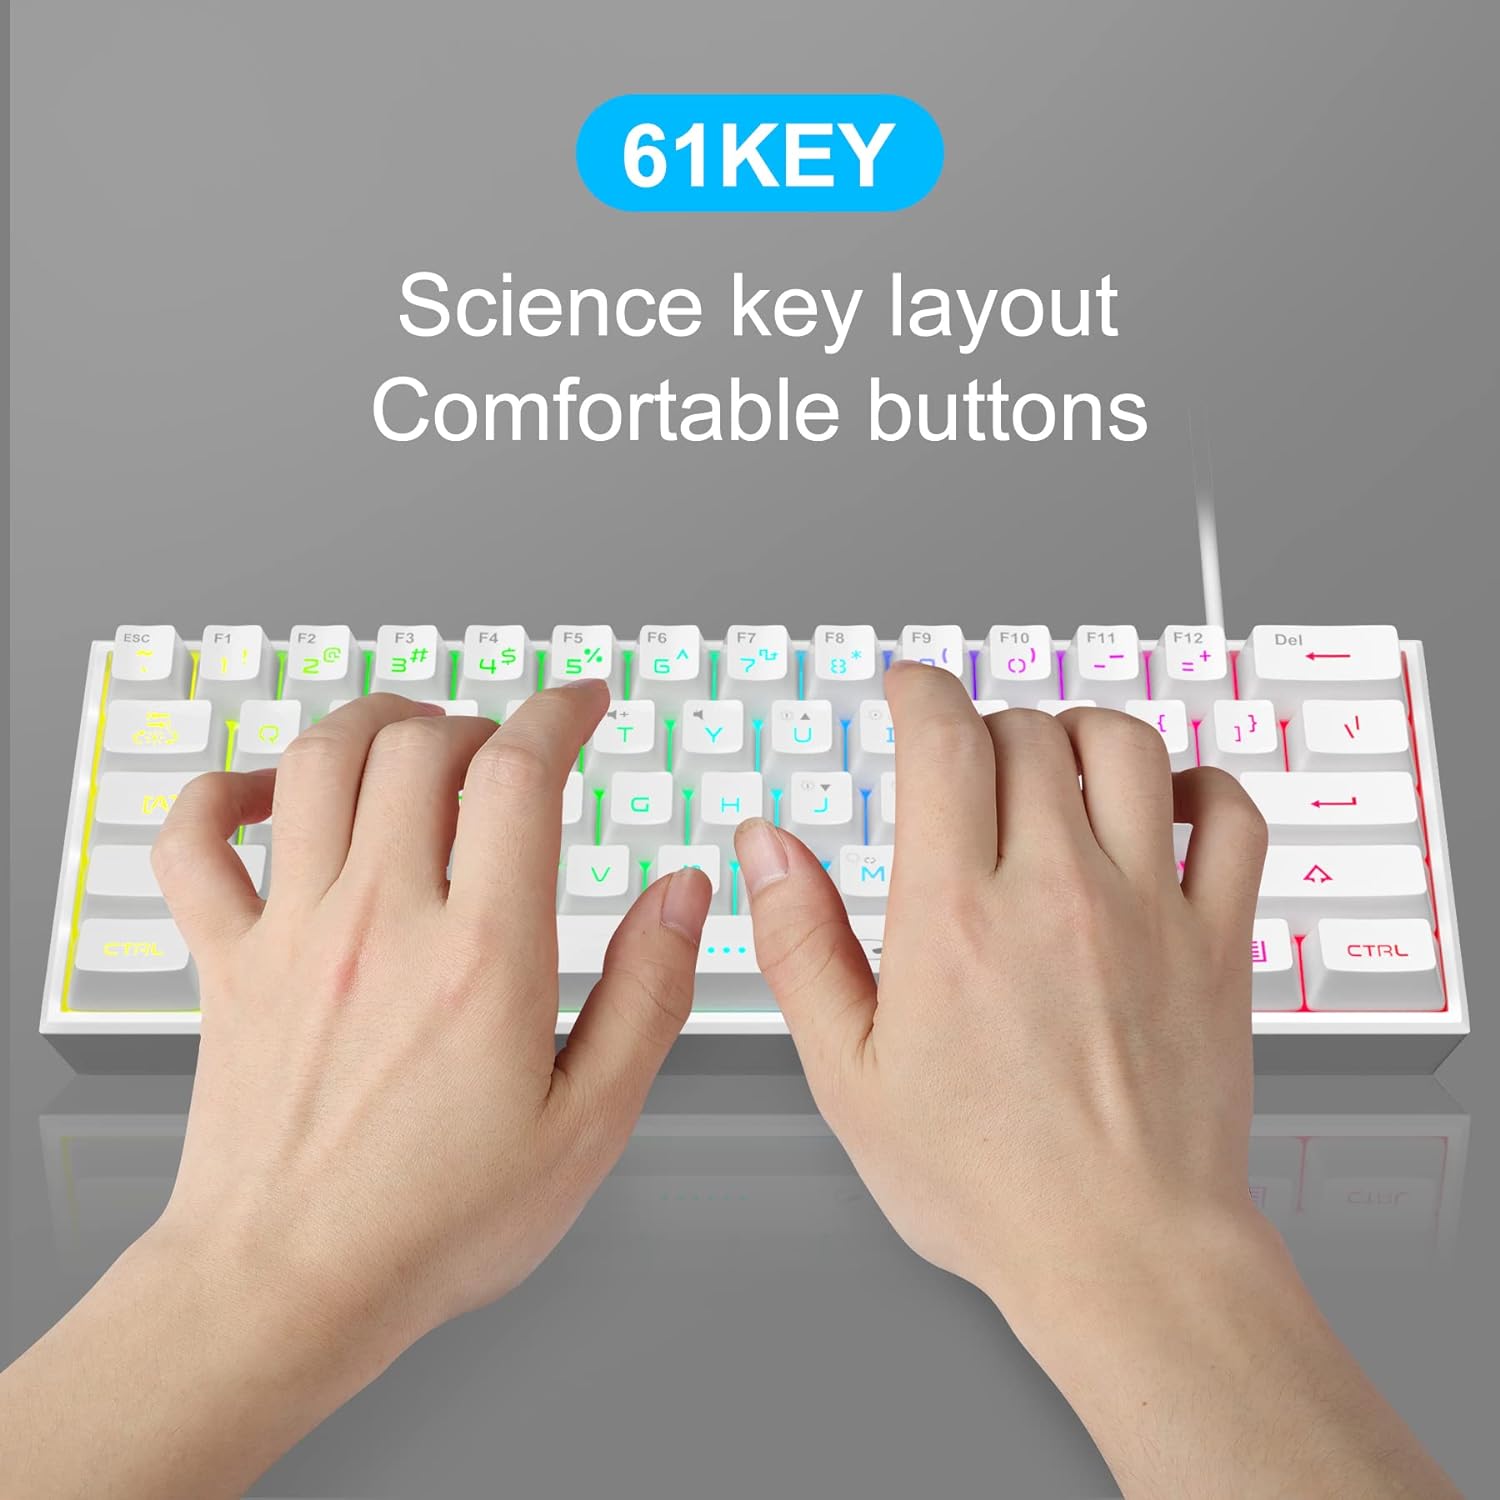 Teclado para juegos 60% con cable, mini teclado ultra compacto  retroiluminado RGB, mini teclado compacto impermeable de 61 teclas para  jugadores de